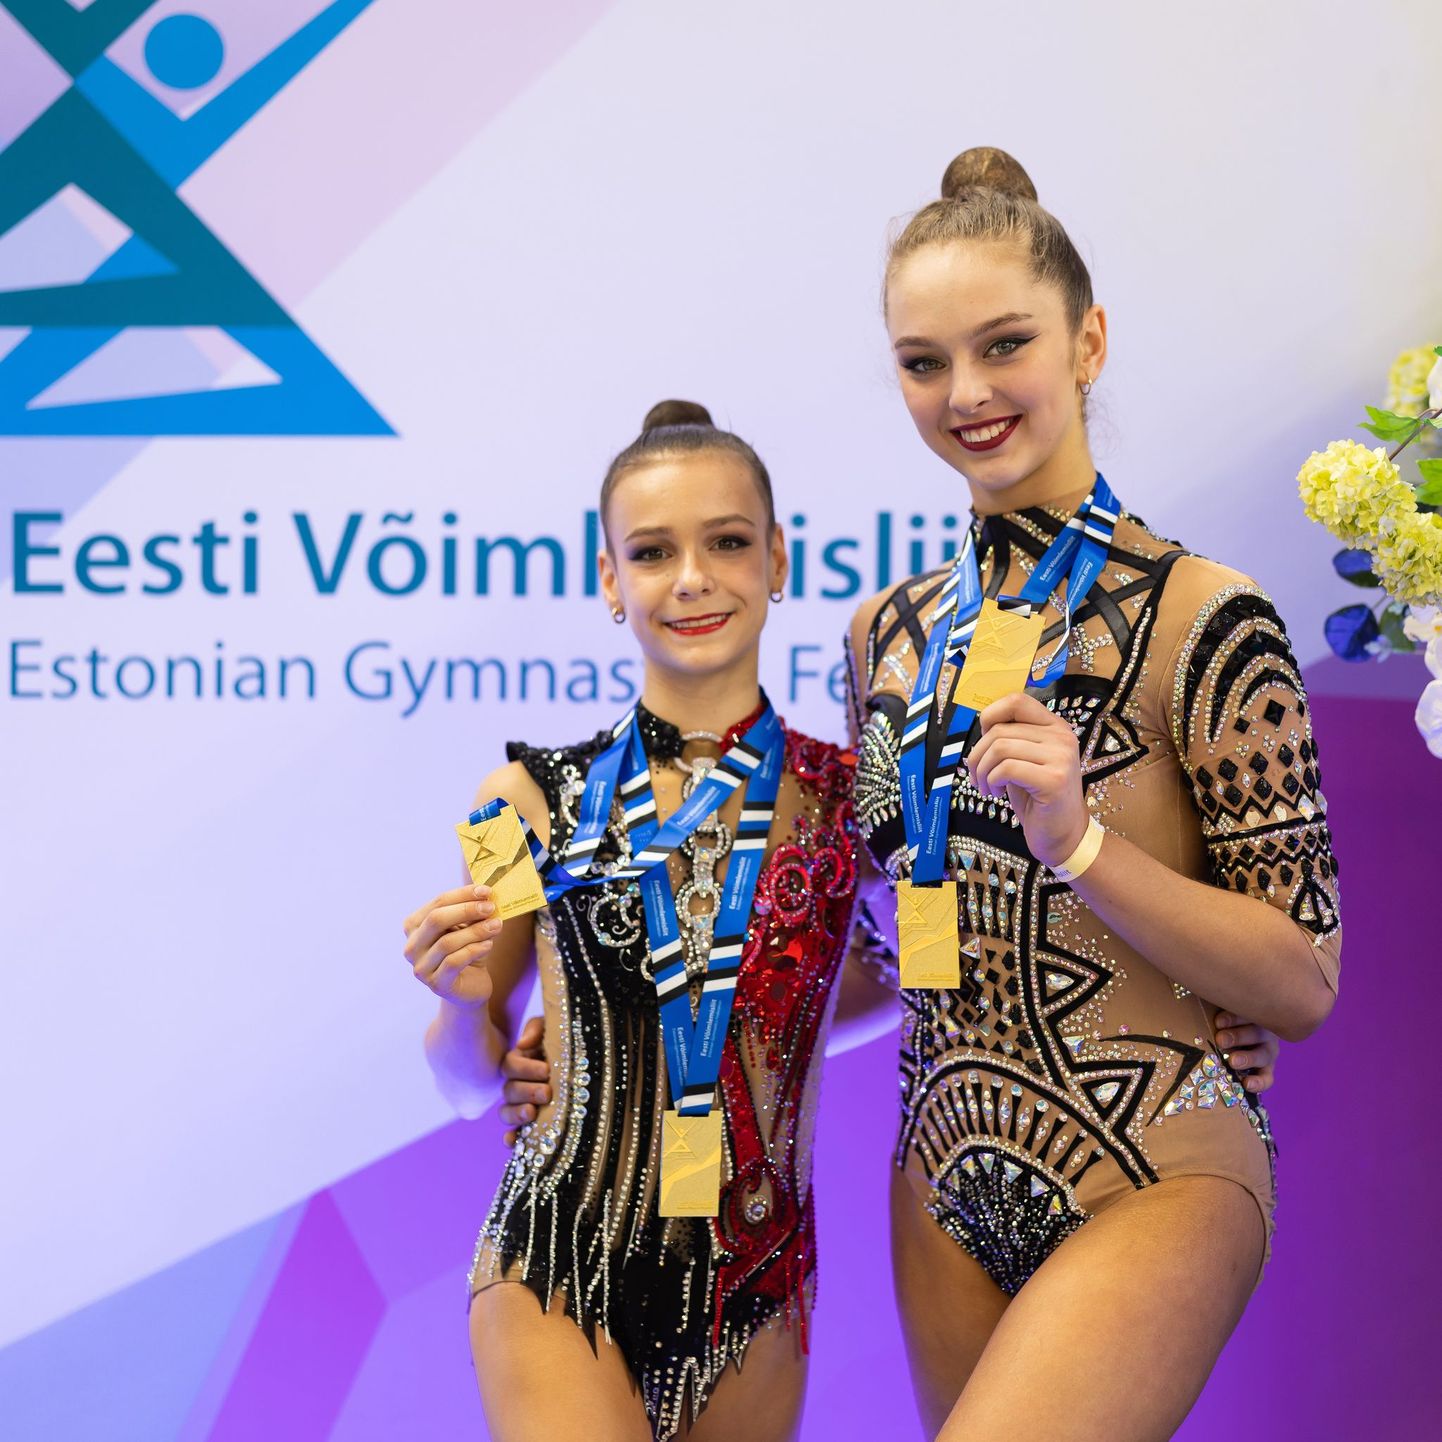 Эстер Крейтсман и Мелани Келер, чемпионат Эстонии по художественной гимнастике 2022. Наступающий сезон обещает быть очень интересным.